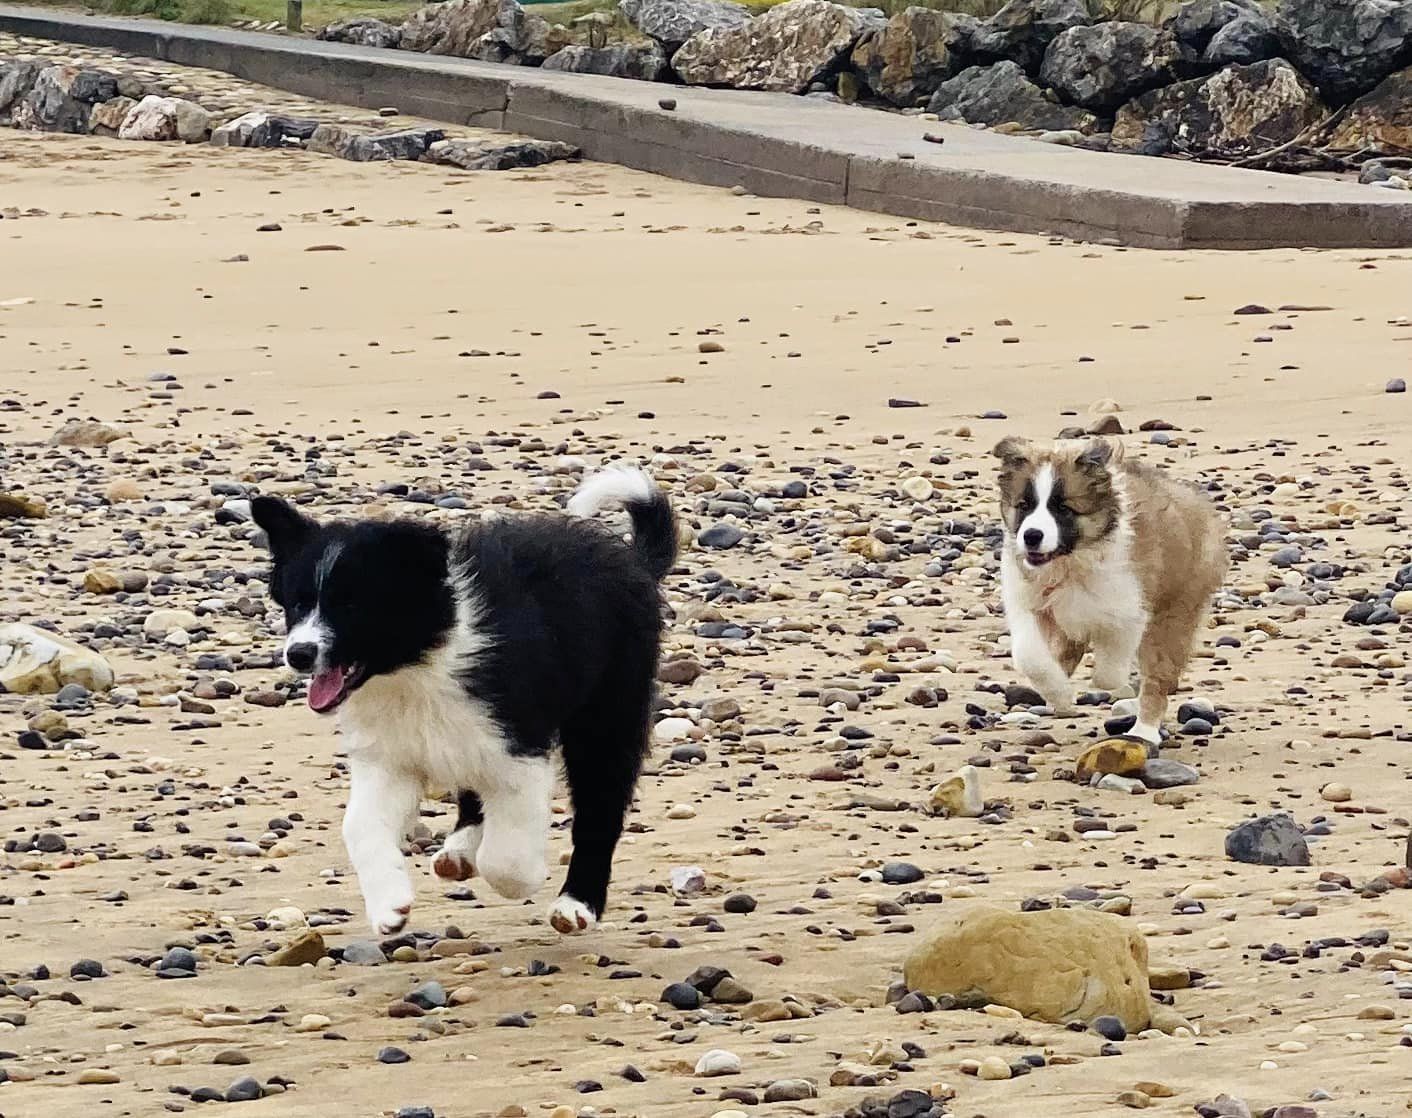 dos perros border collie un macho con colores blanco y negro, y una hembra con colores lila tricolor, estan saltando alegremente mientras pasean por la playa en una zona donde hay muchas piedras